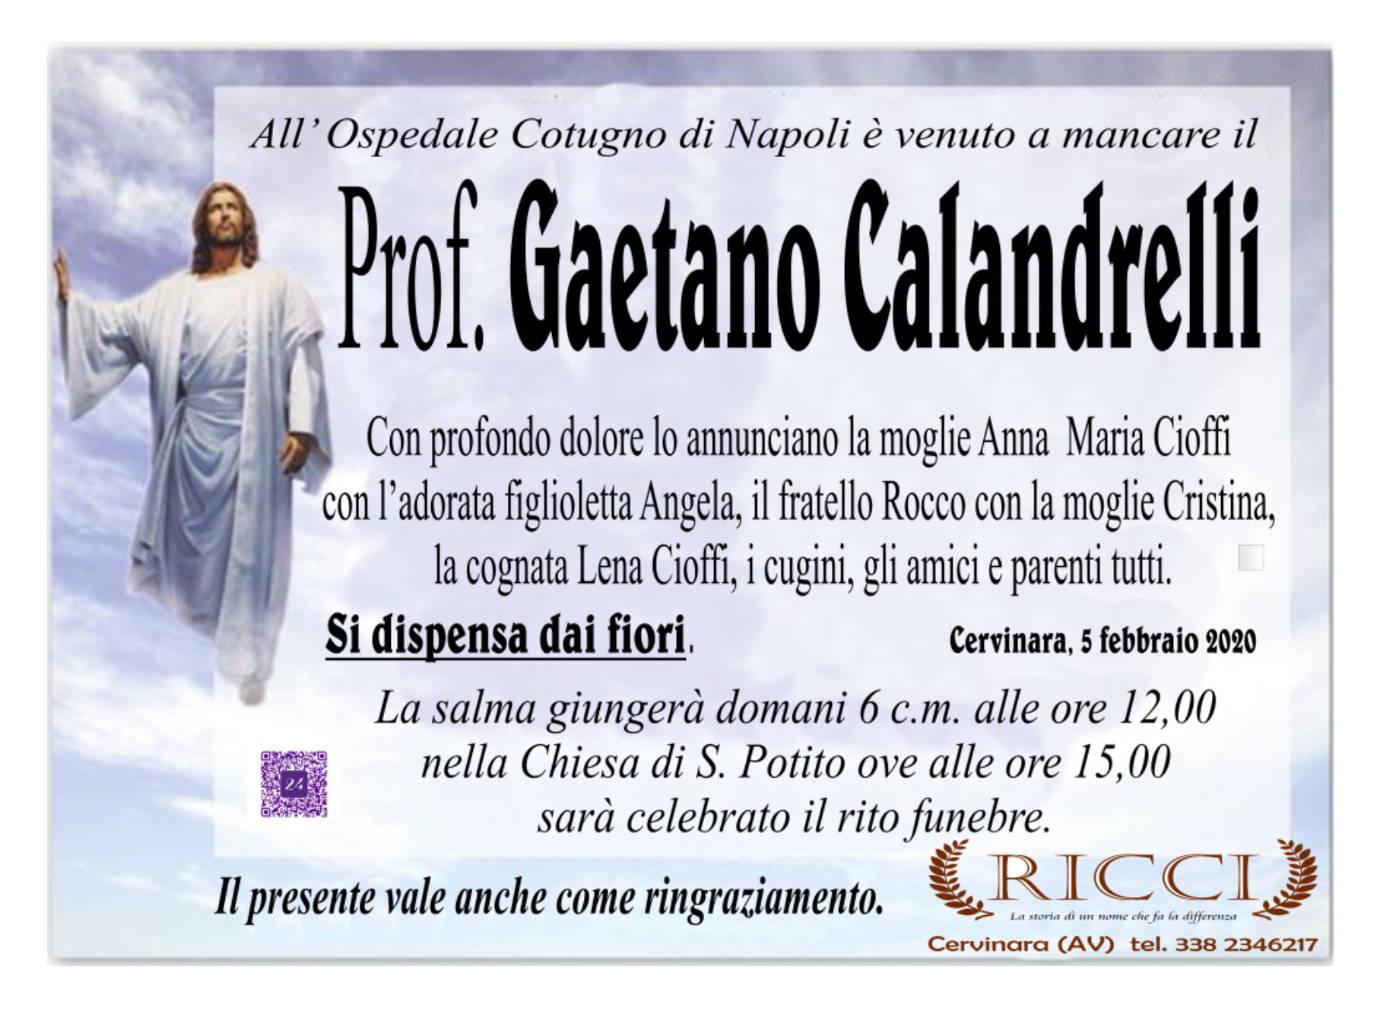 Prof. Gaetano Calandrelli